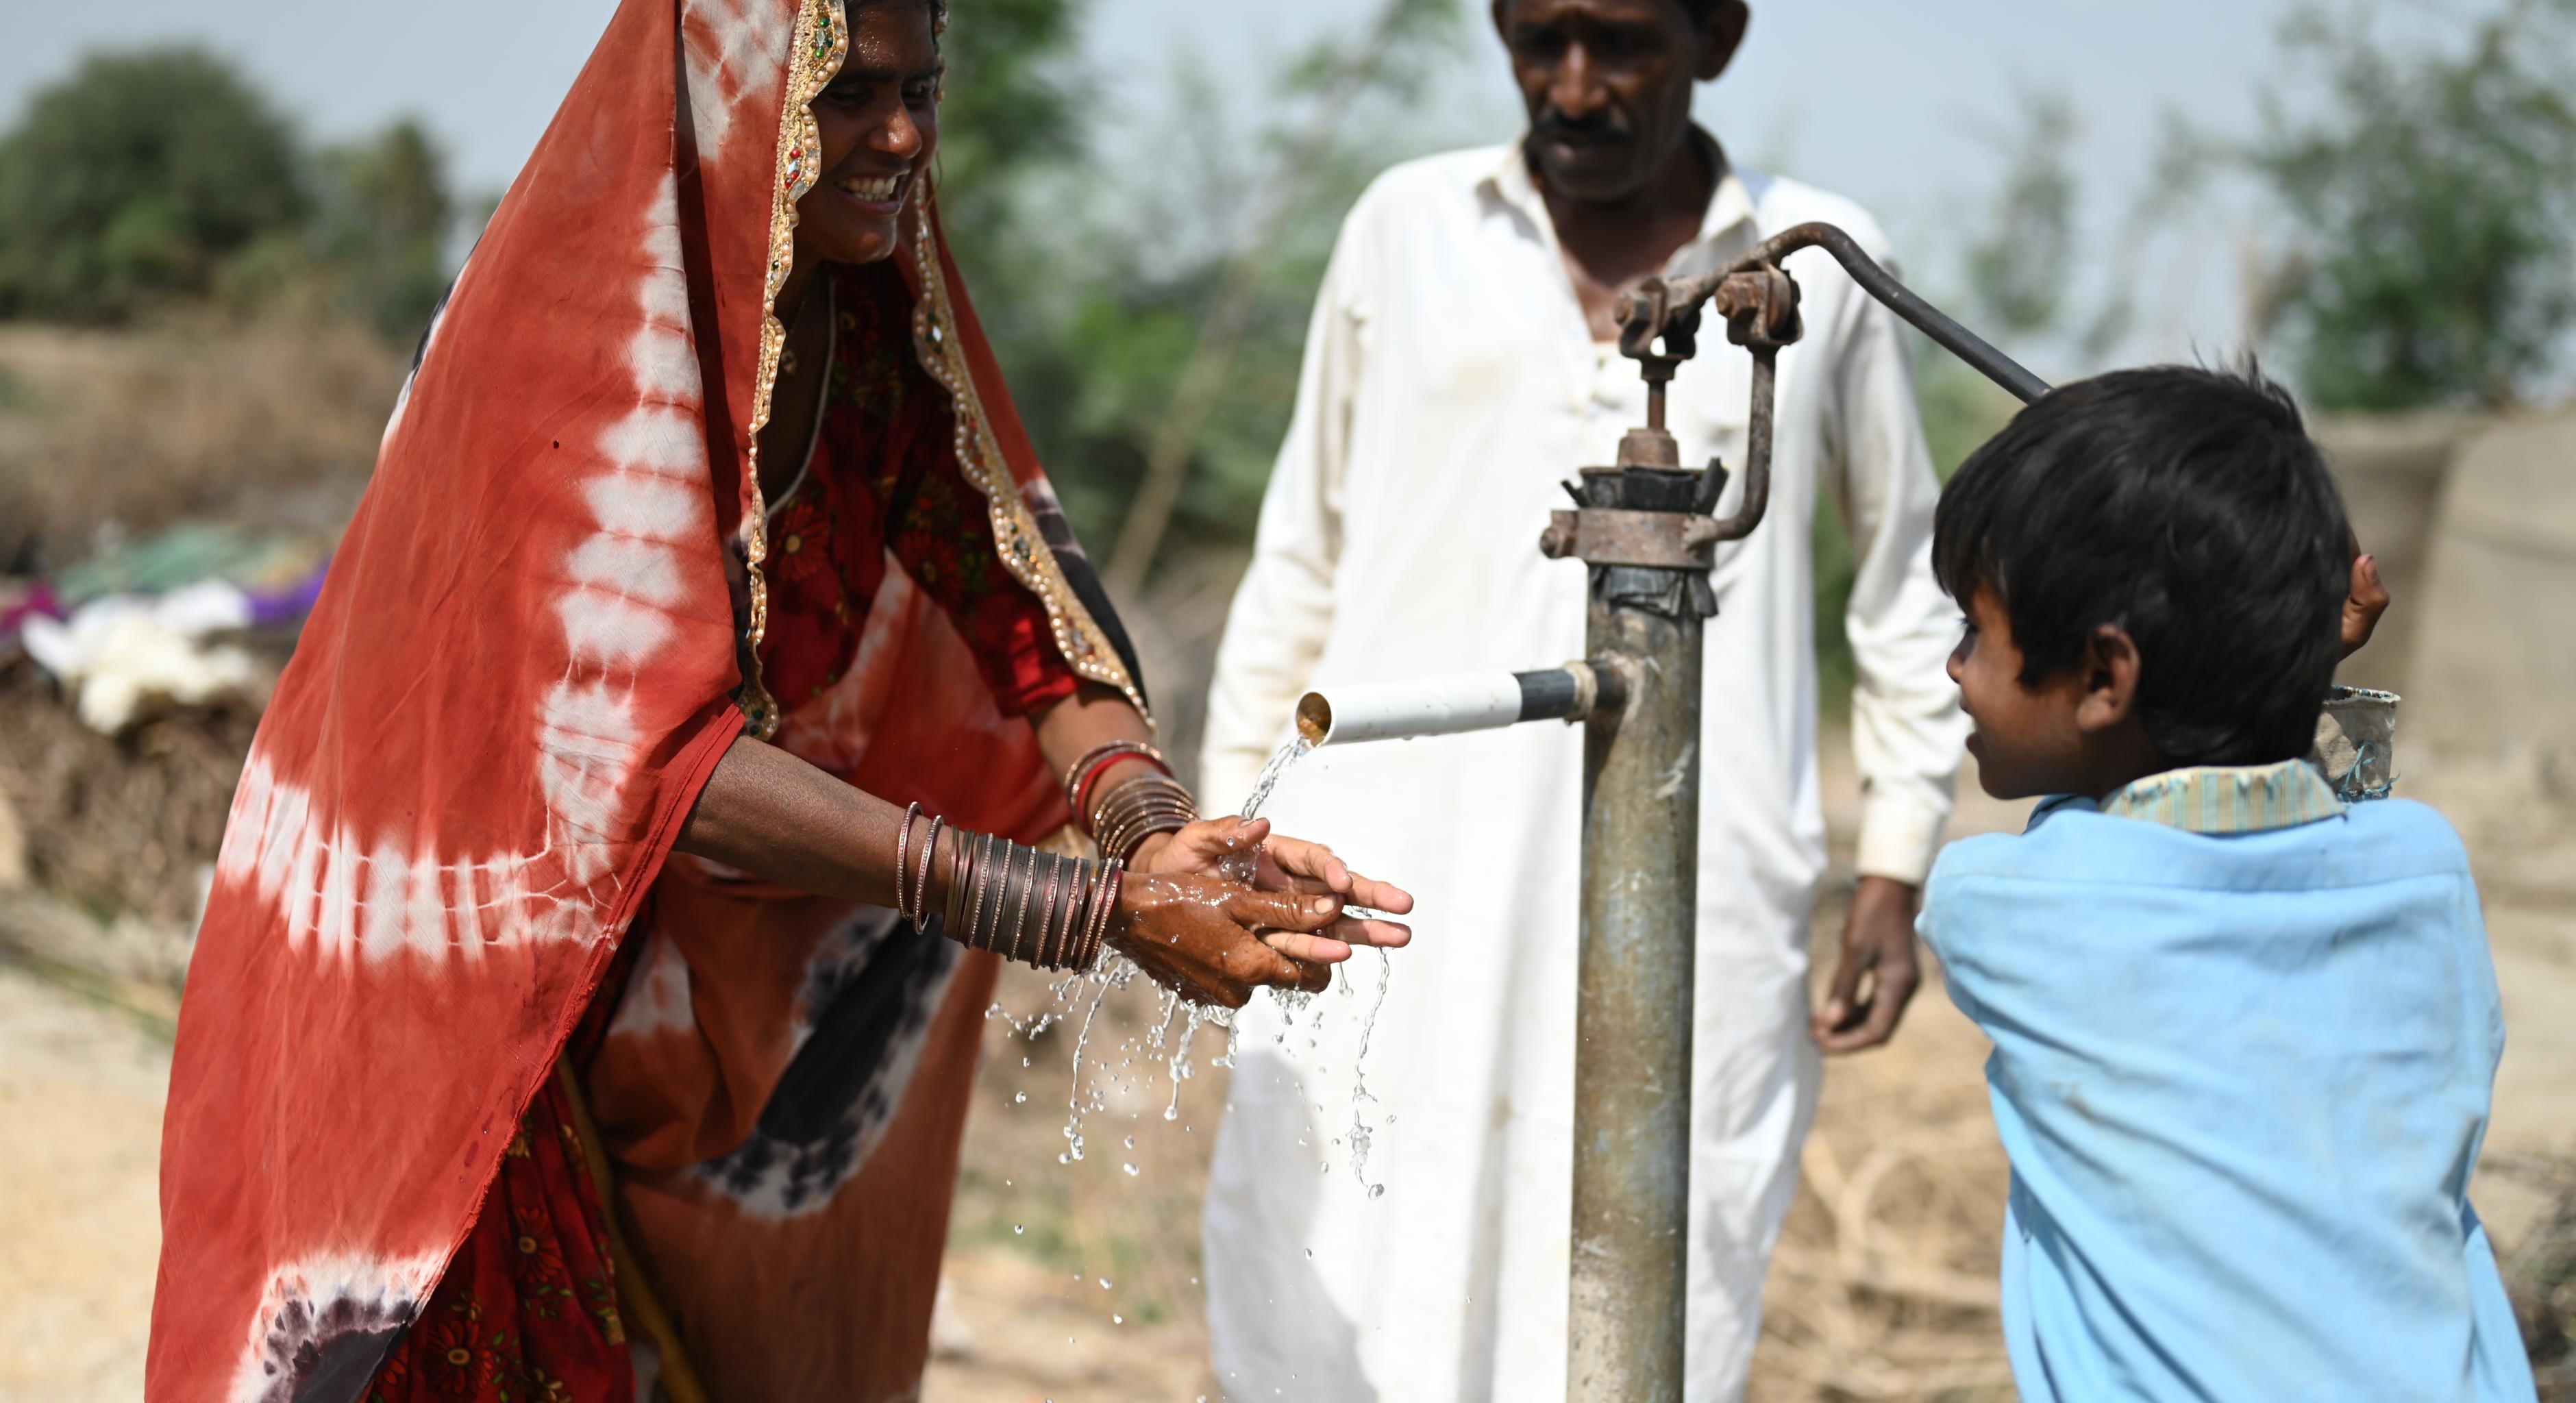 Eine Familie benutzt eine neu installierte Hand-Wasserpumpe. Das Kind (rechts) bedient die Pumpe, während die Mutter (links) ihre Hände unter den Wasserstrahl hält. Im Hintergrund steht eine dritte Person.